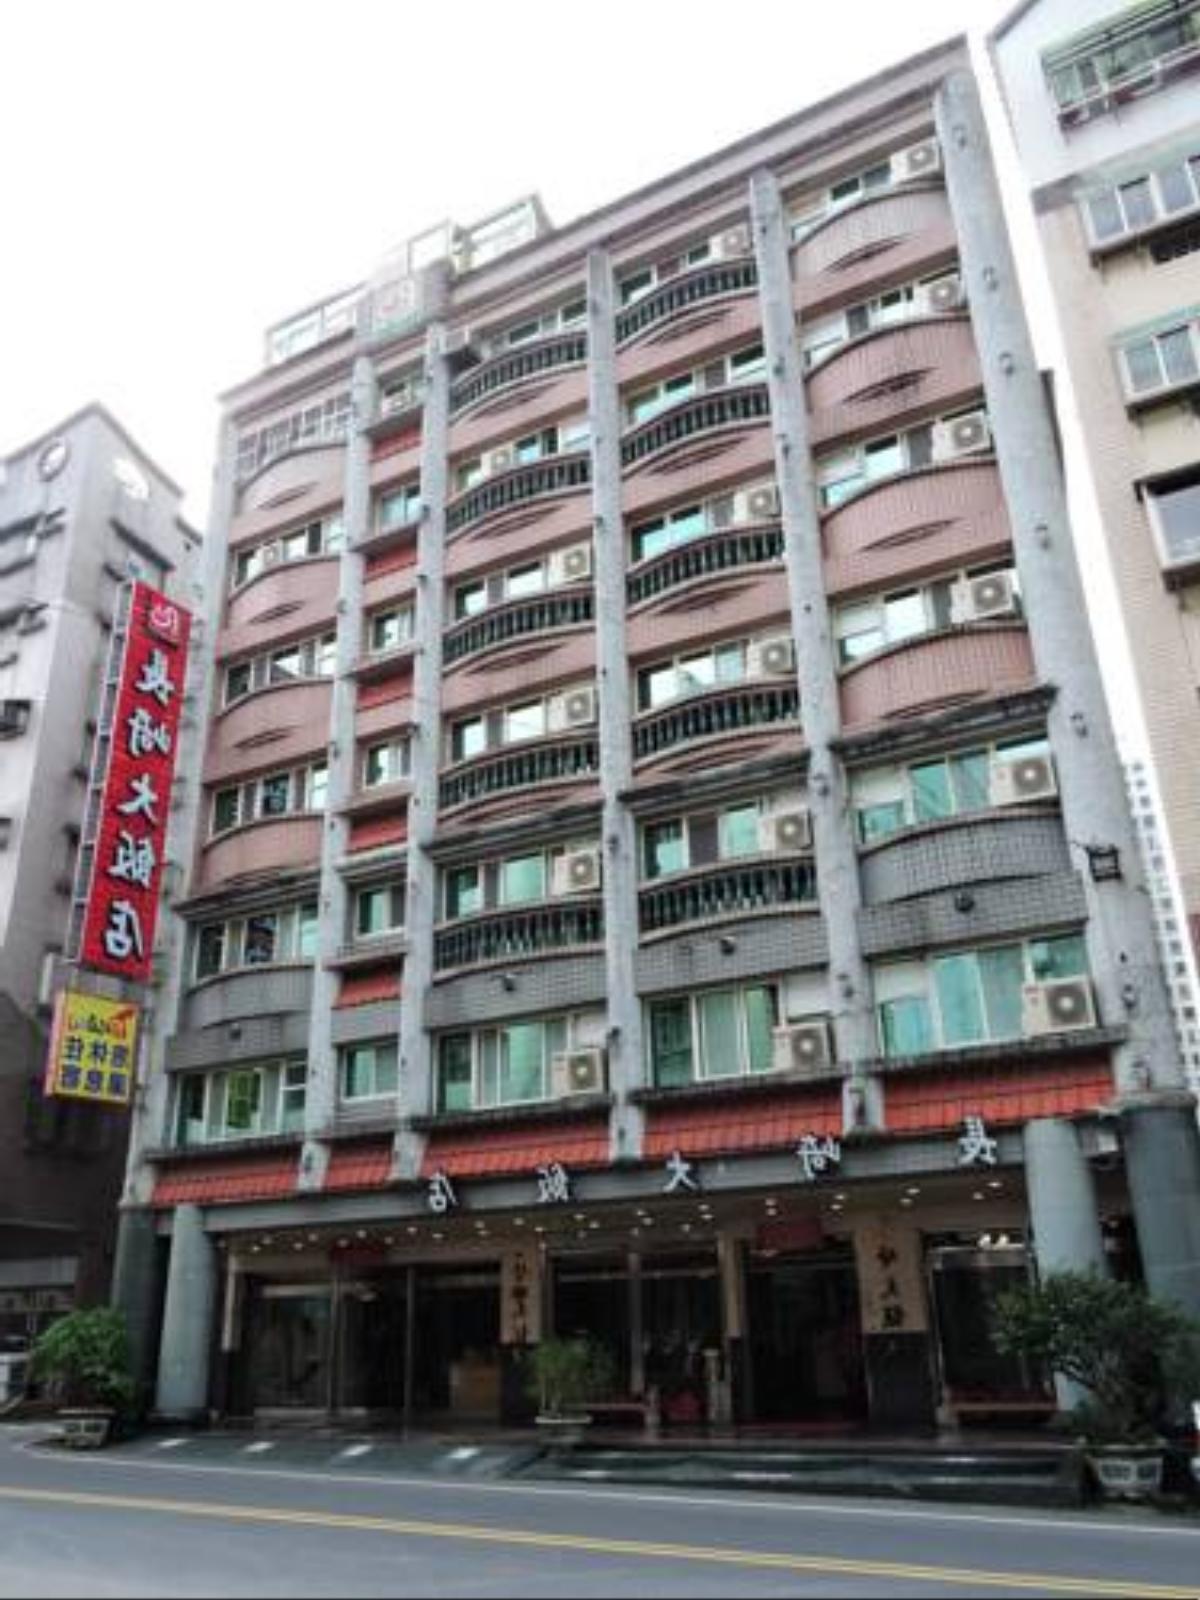 Longchi Hot-Spring Hotel Hotel Jiaoxi Taiwan